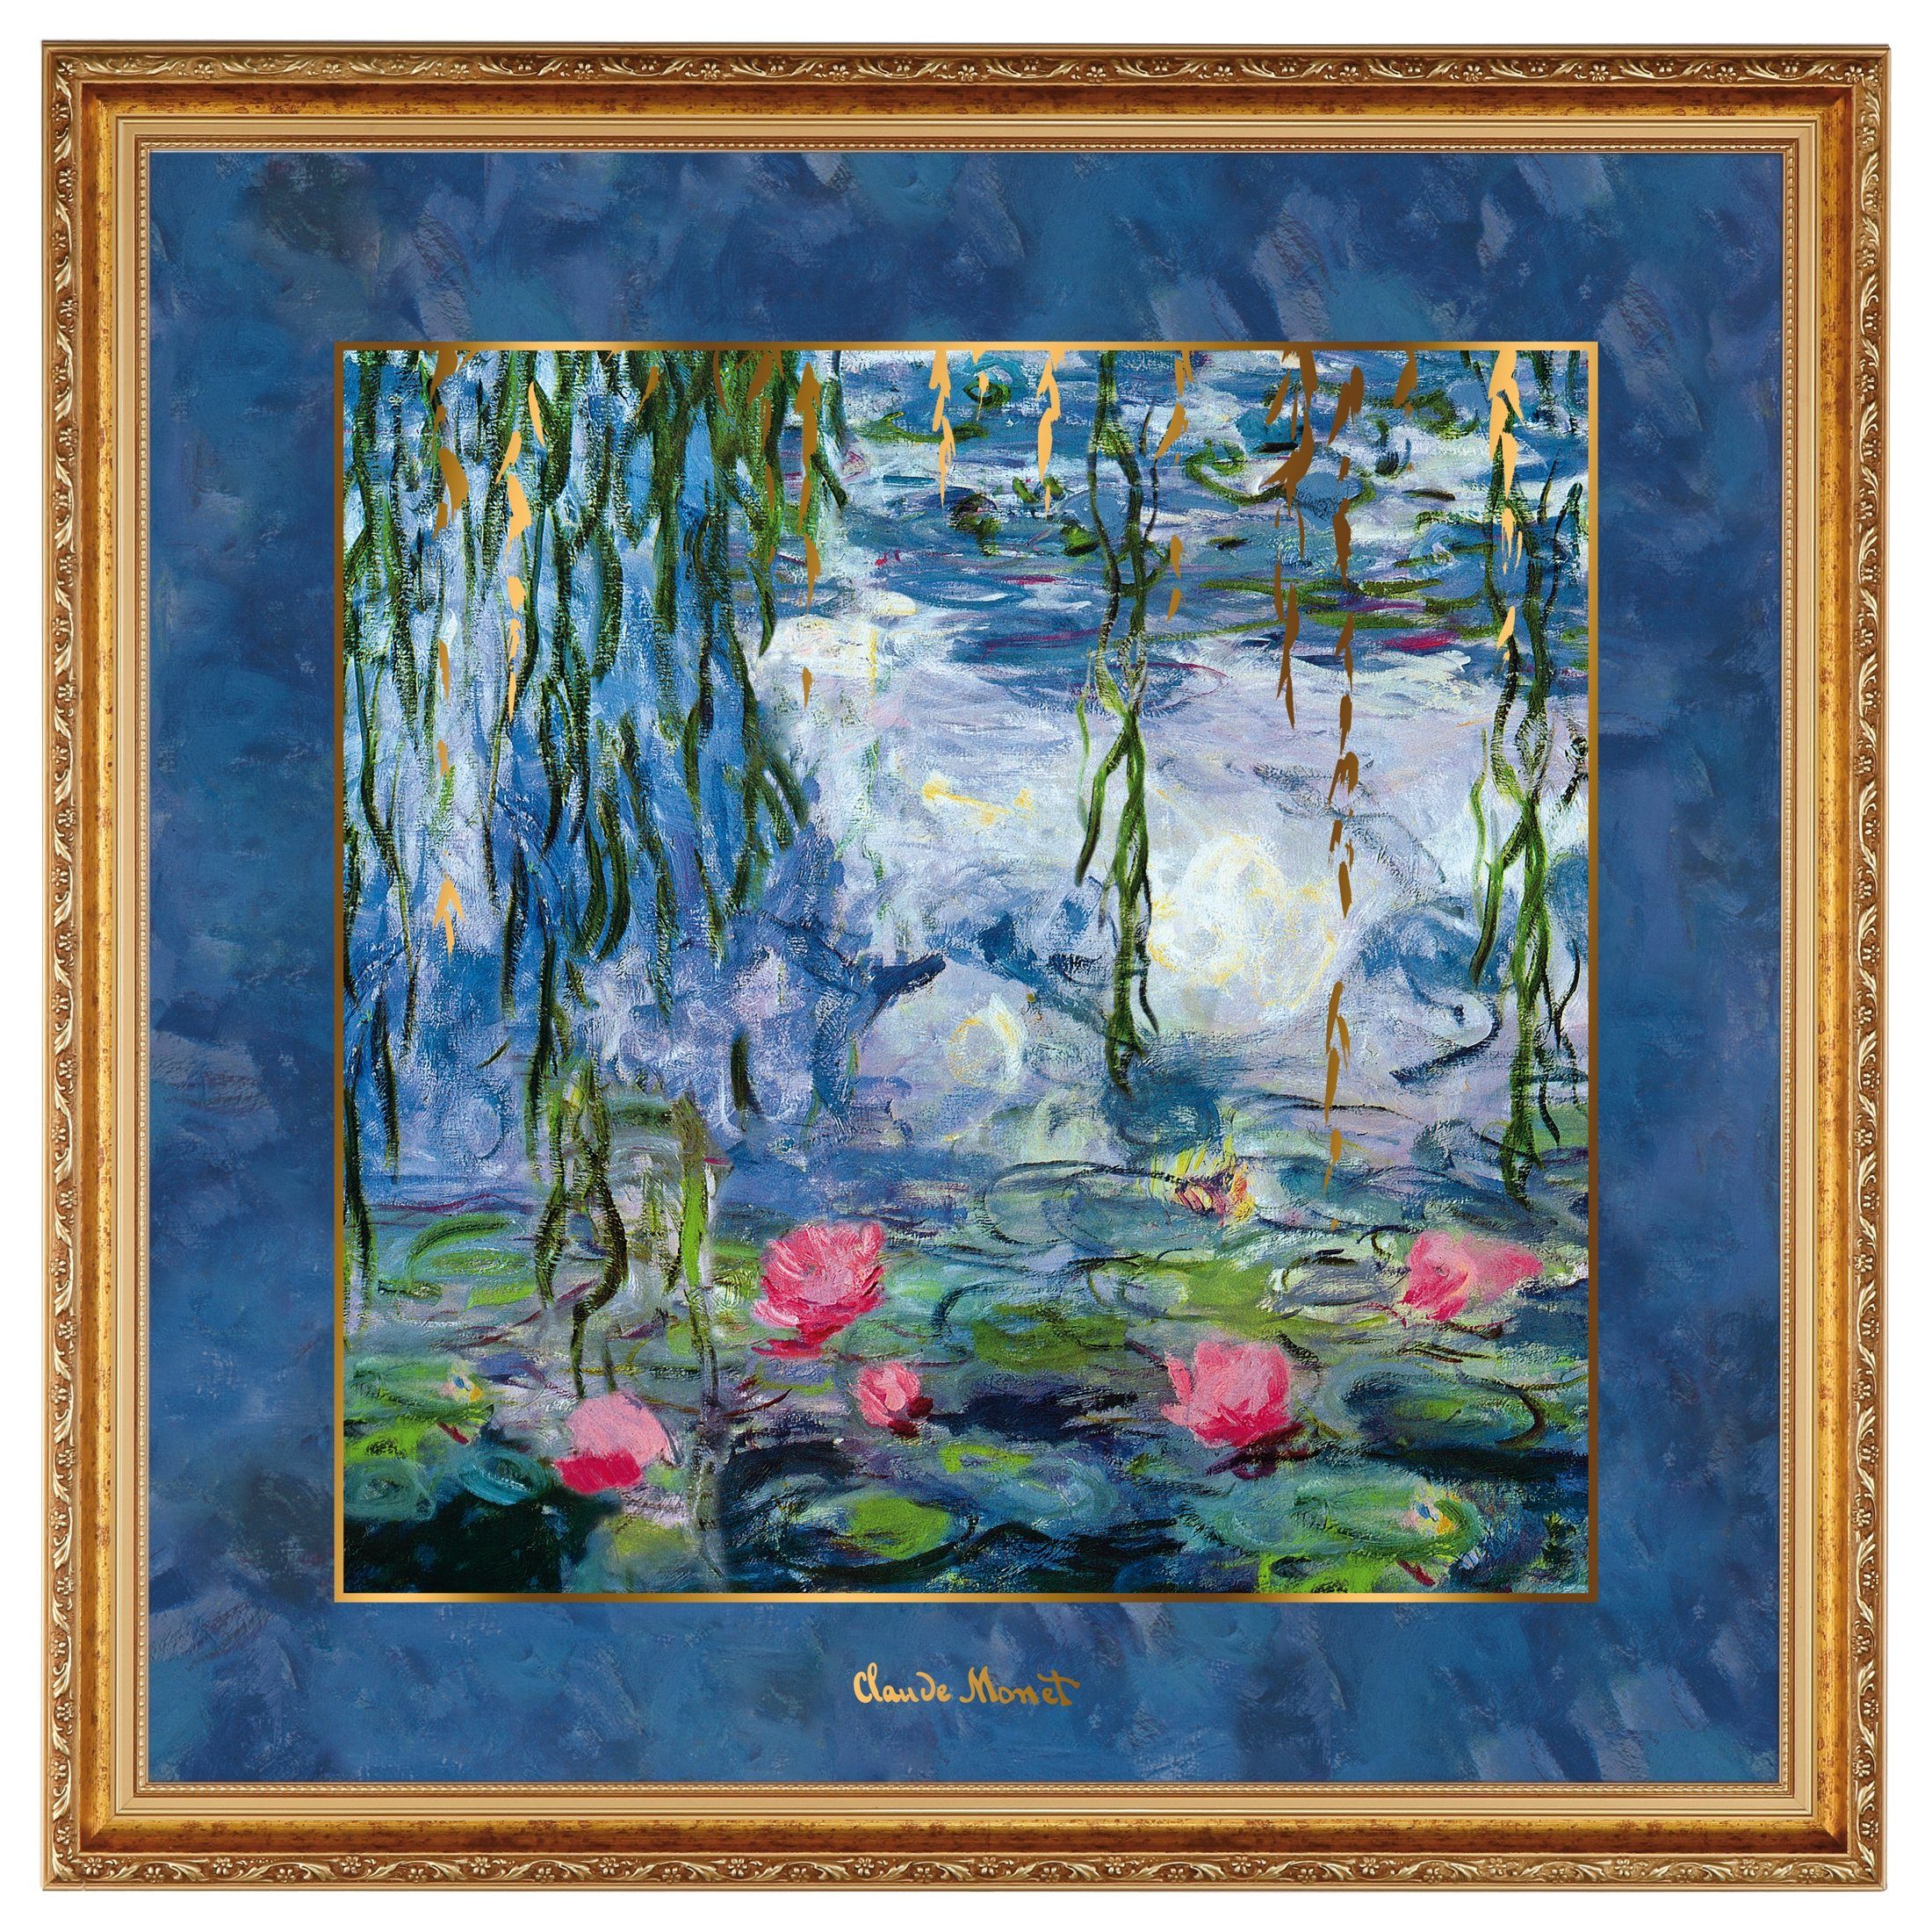 Goebel Wandbild Goebel Artis Orbis Claude Monet 'Seerosen mit Weide - Wandbild'